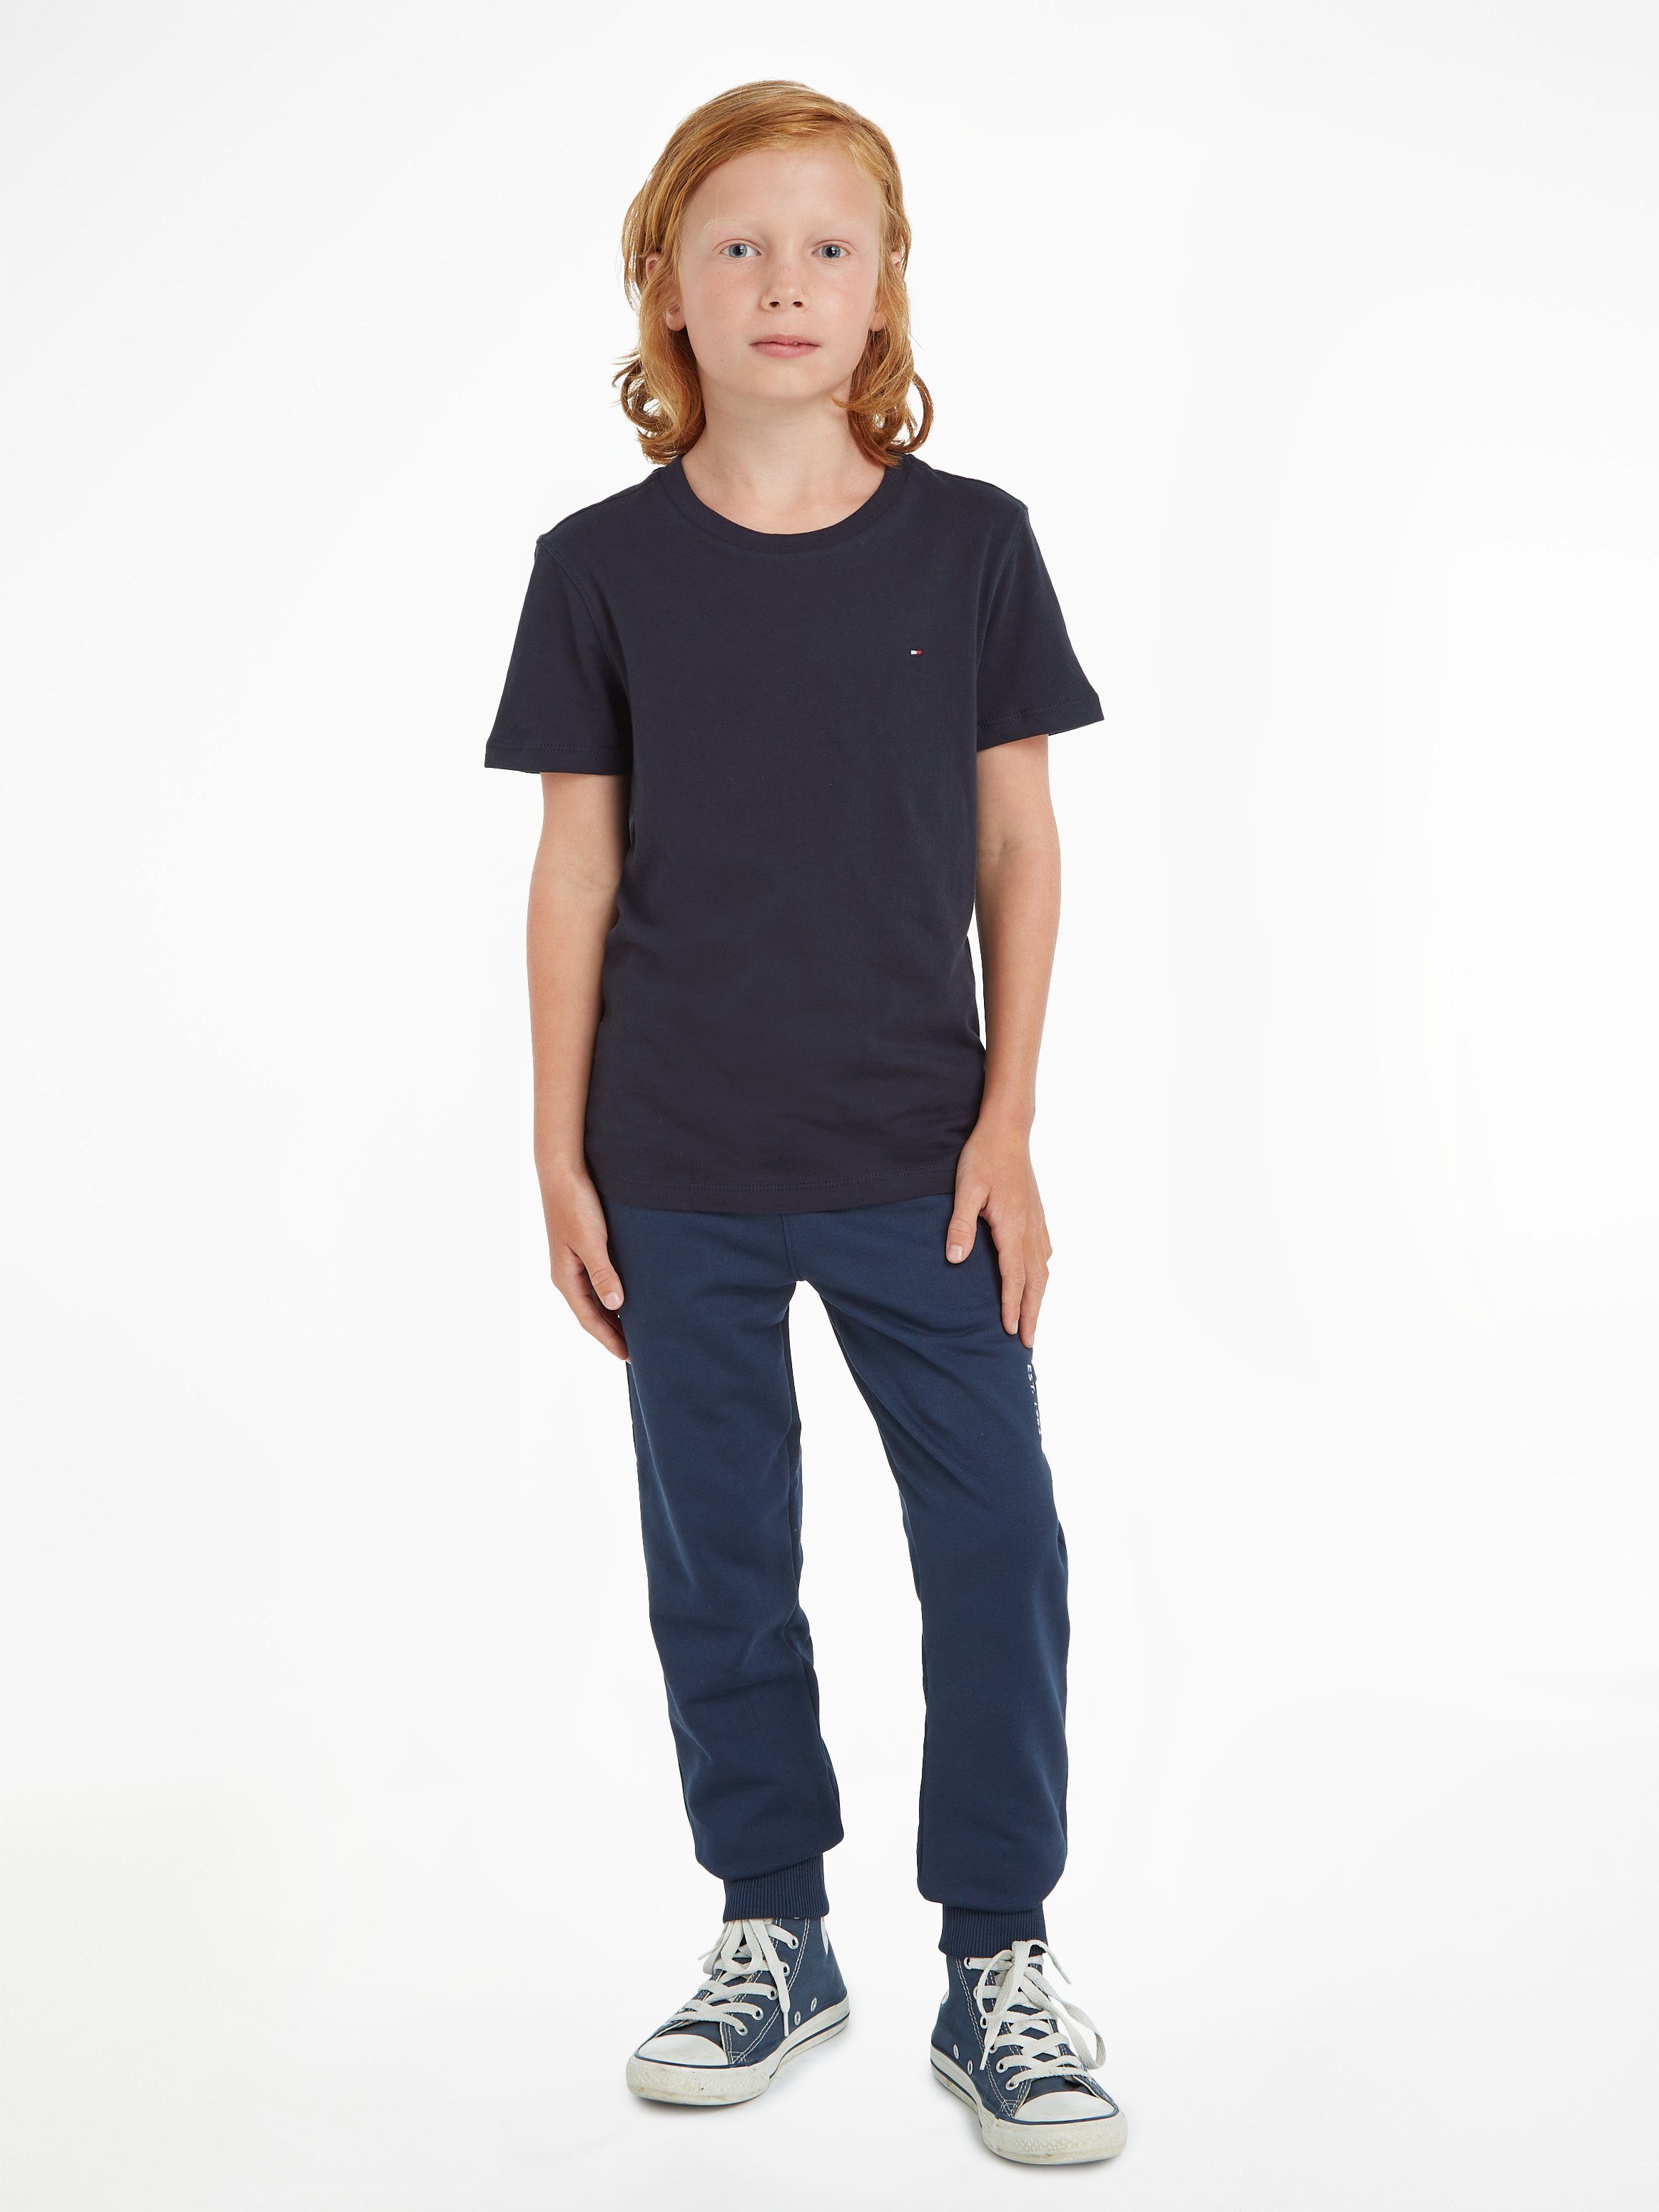 Label T-Shirt und Tommy hinten Junior farbigem Mit Ausschnitt Jungen, MiniMe,für CN am Kinder BASIC BOYS KNIT Hilfiger Kids Stickerei